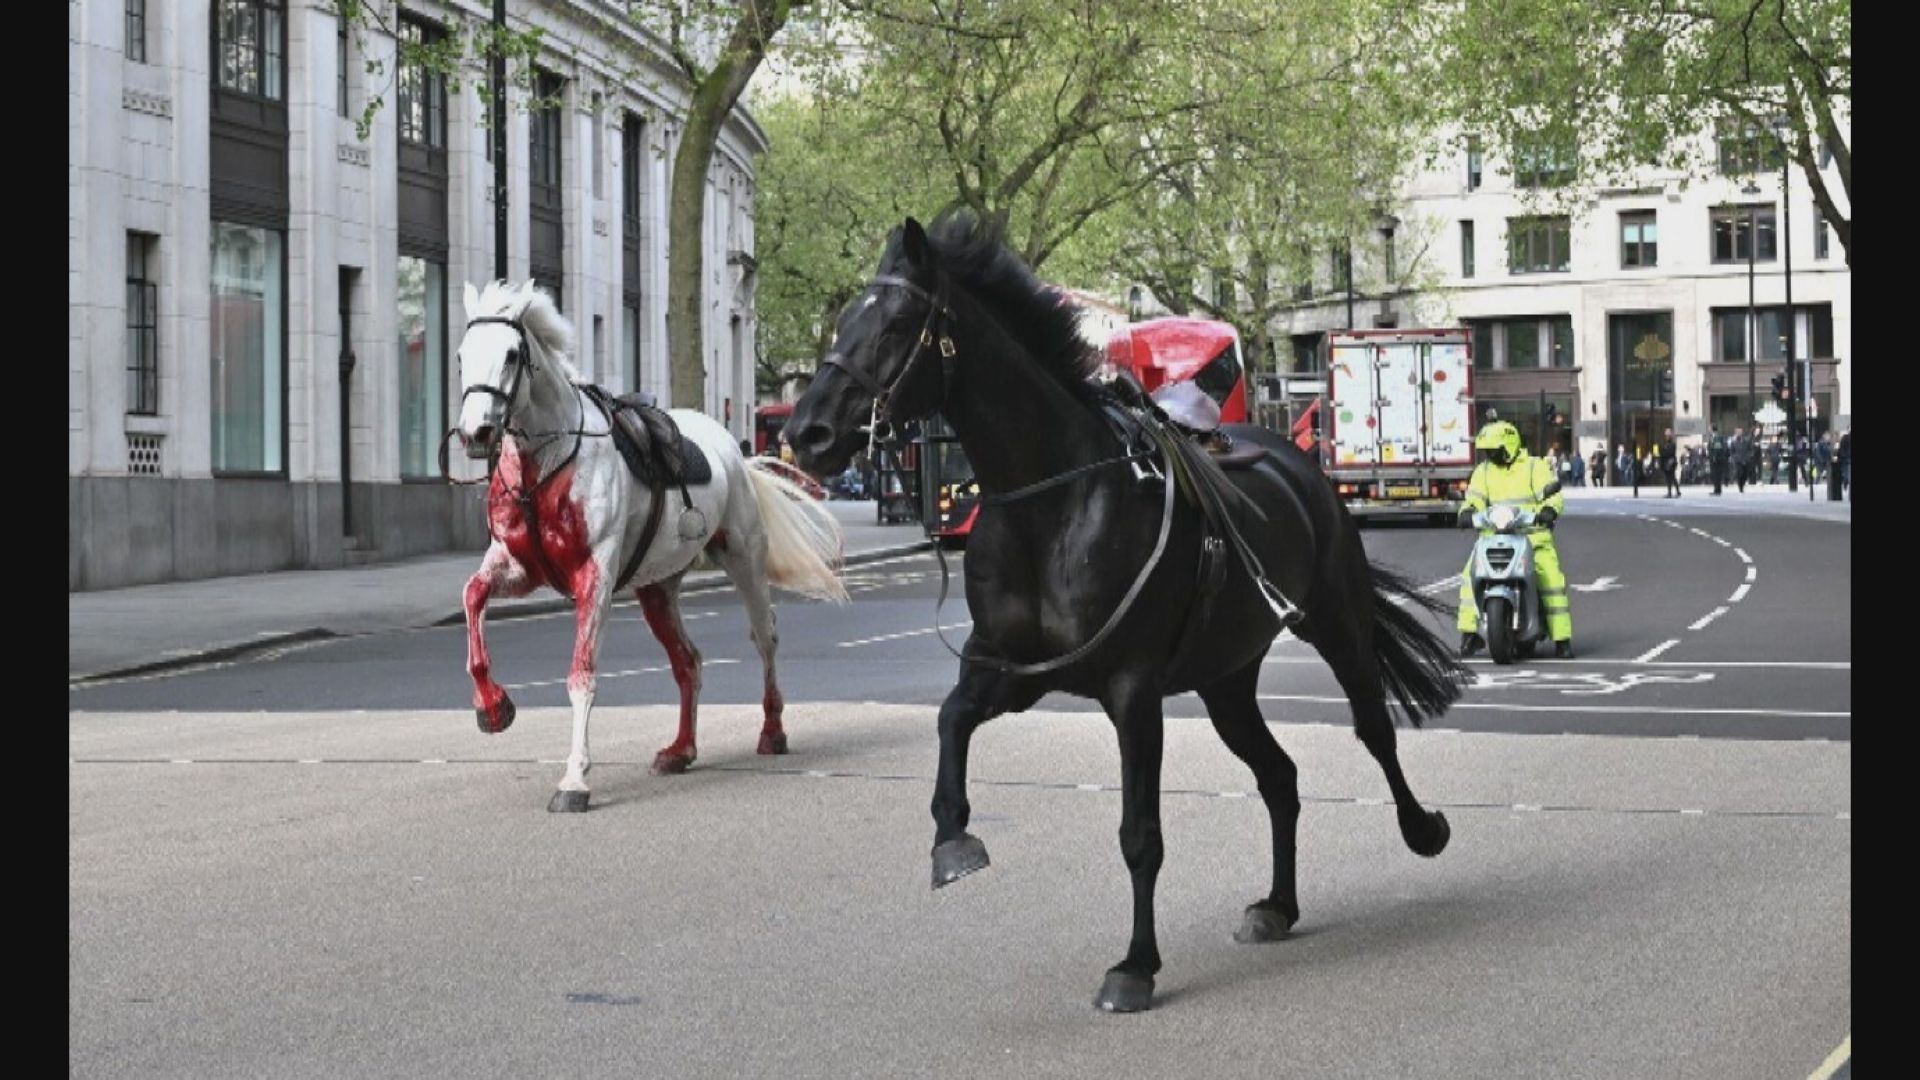 倫敦多匹軍馬街頭失控亂跑 多人受傷